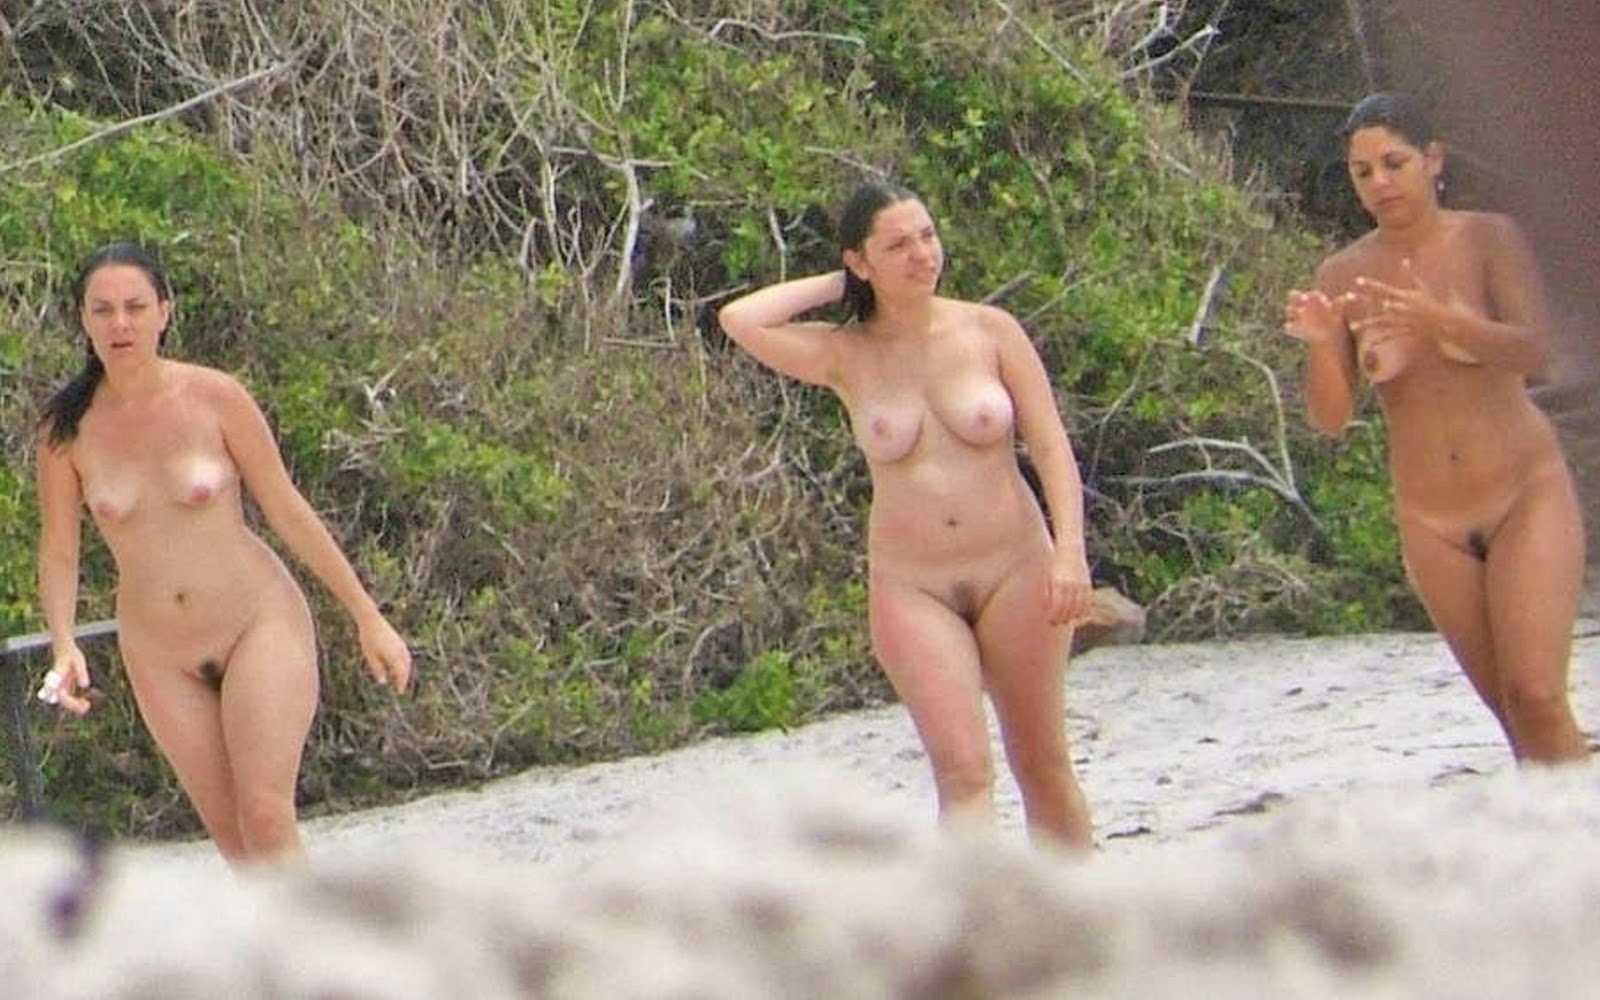 Brazilian nude beach compilation